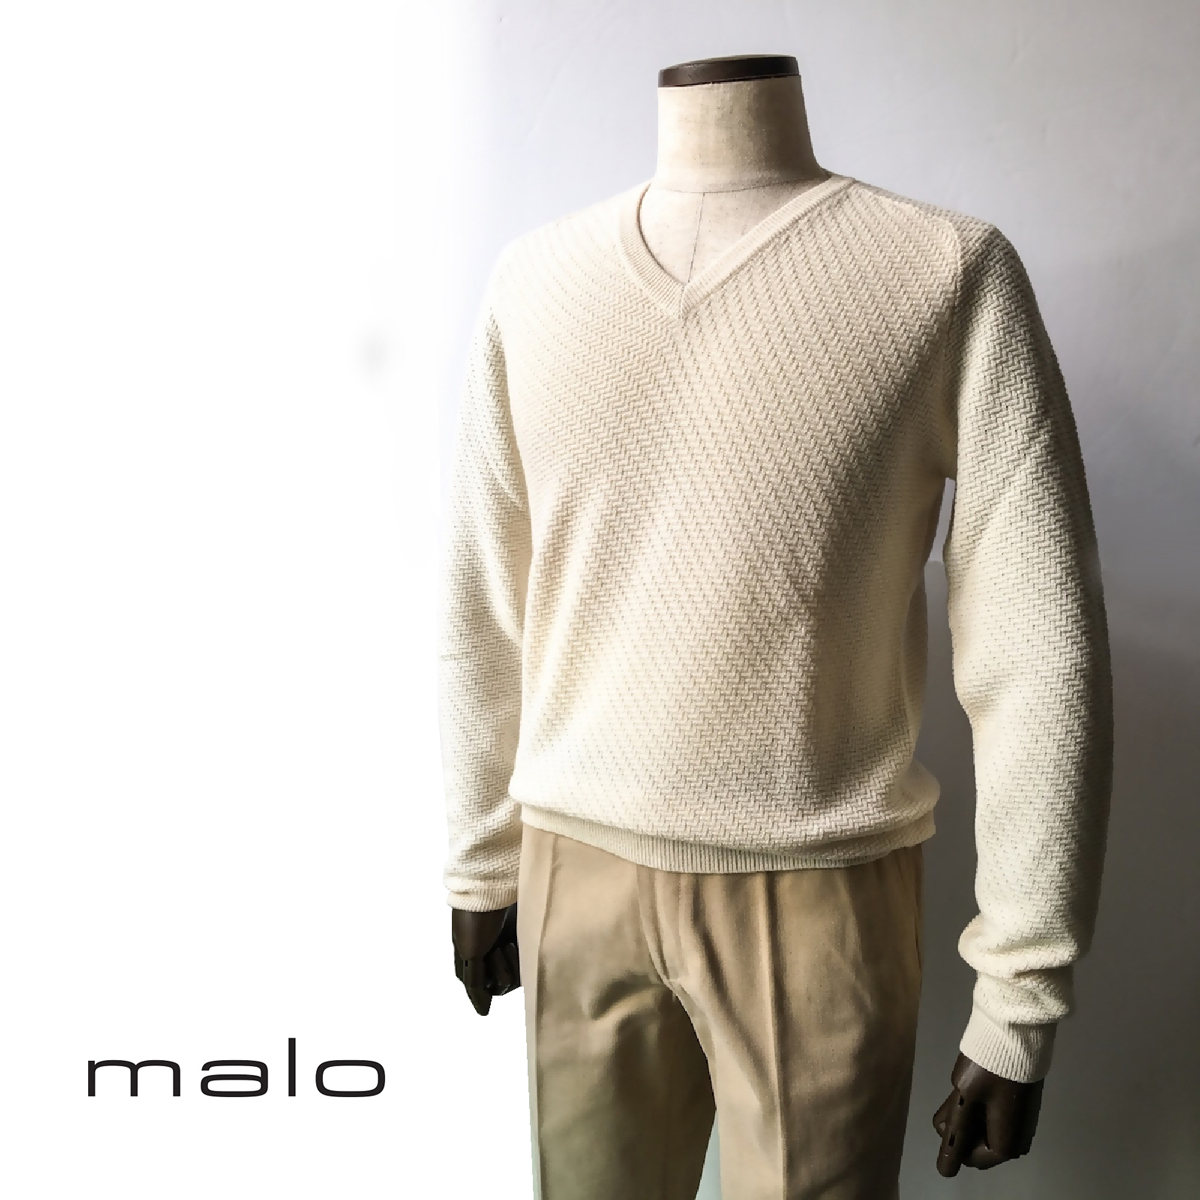 【会員登録で50%OFF】malo (マーロ) セーター カシミヤ Vネック ホワイト - 銀座HIKO公式オンラインストア